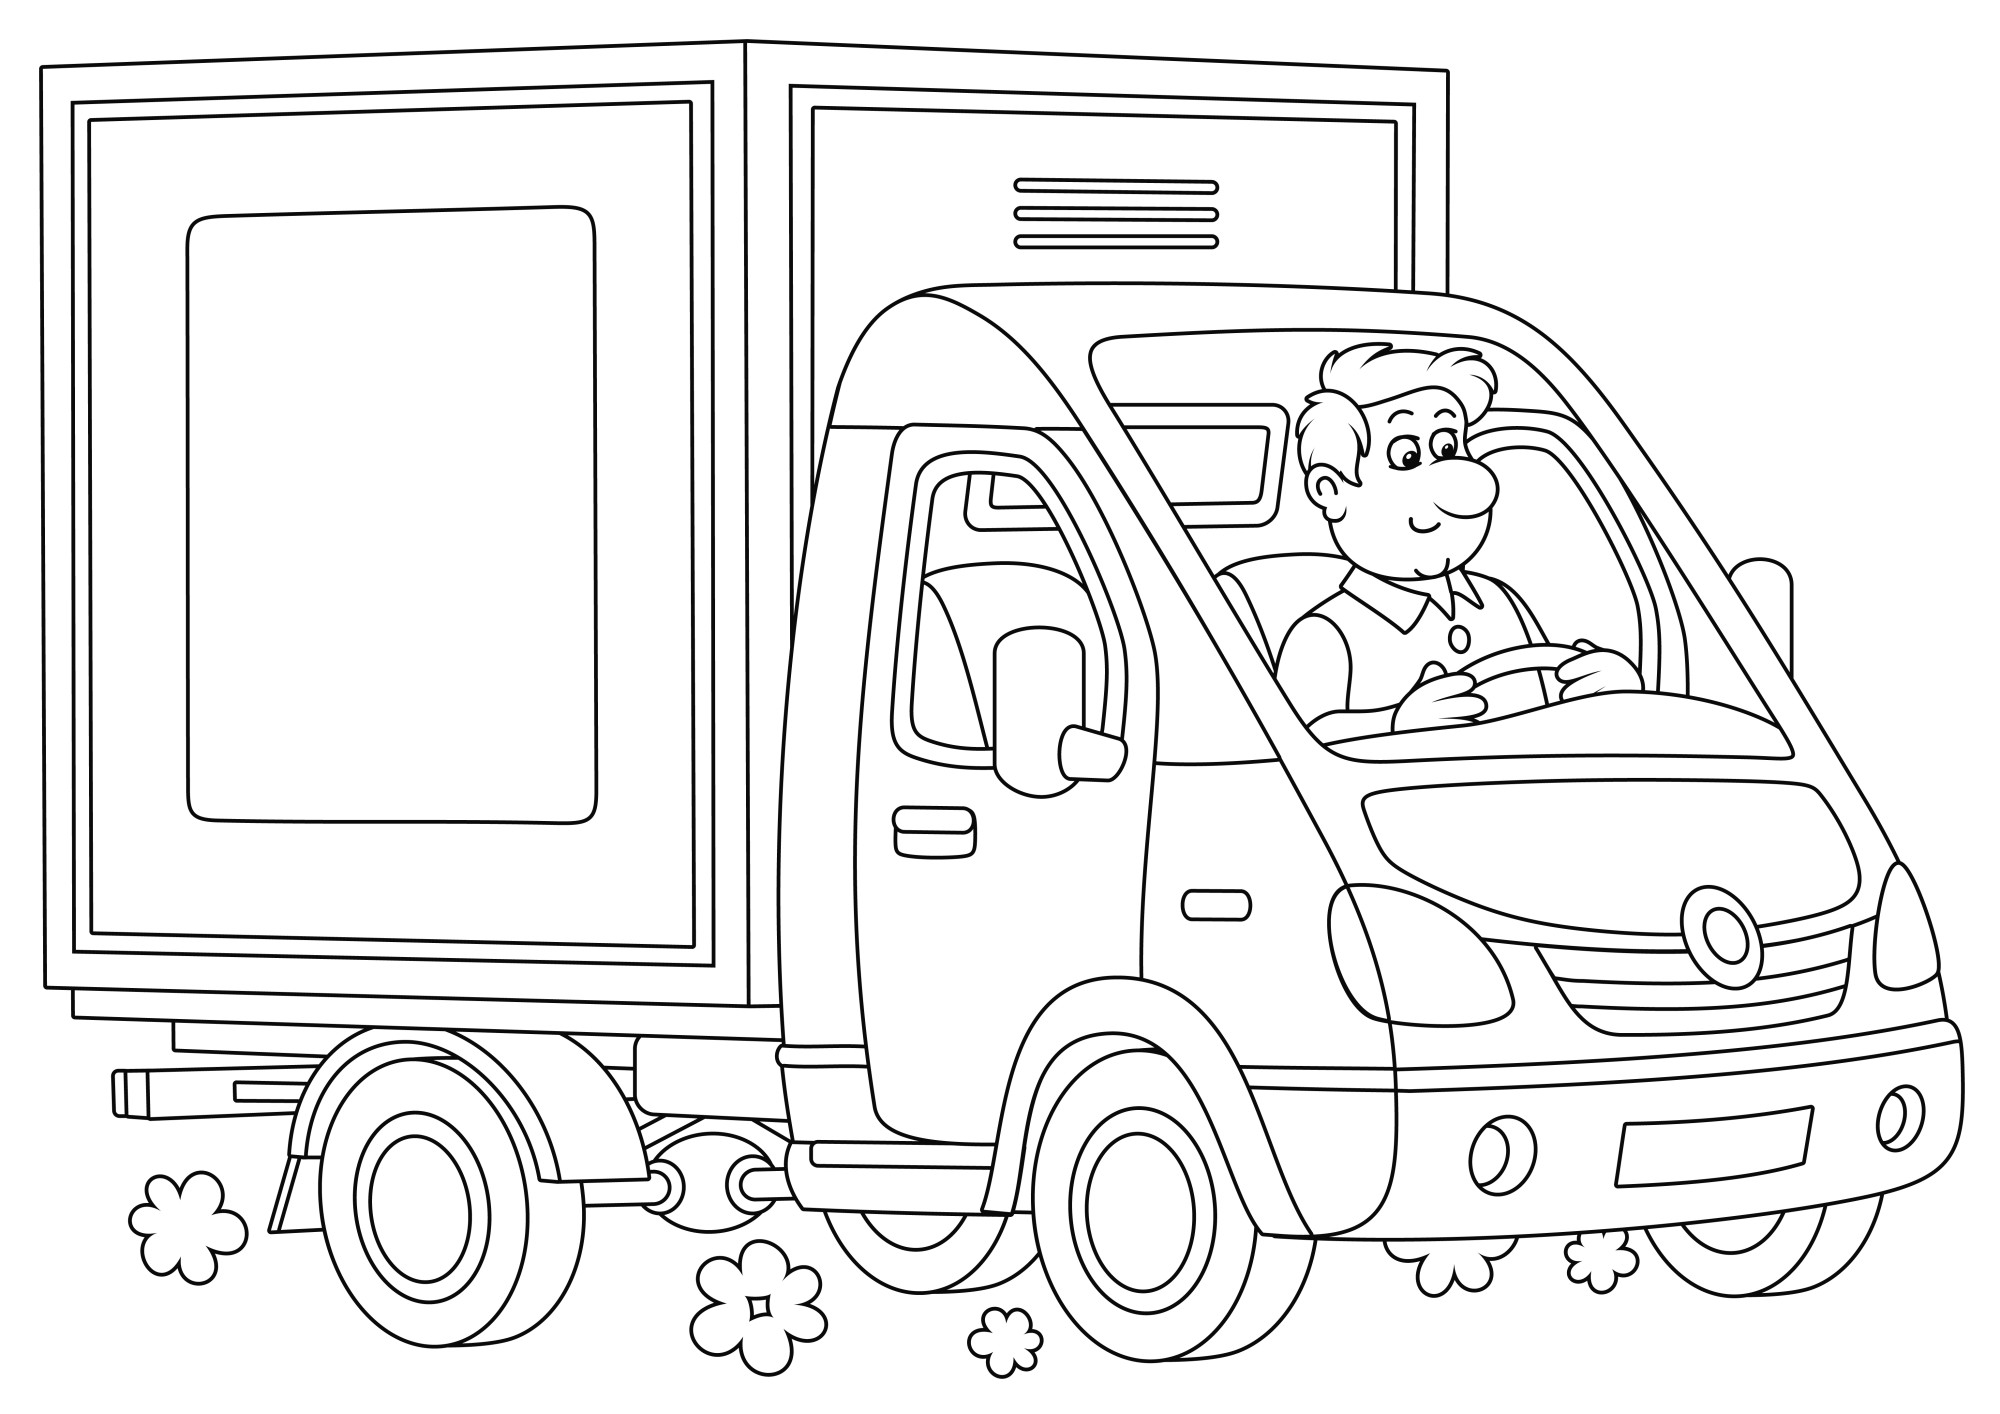 Раскраска для детей: грузовик с водителем